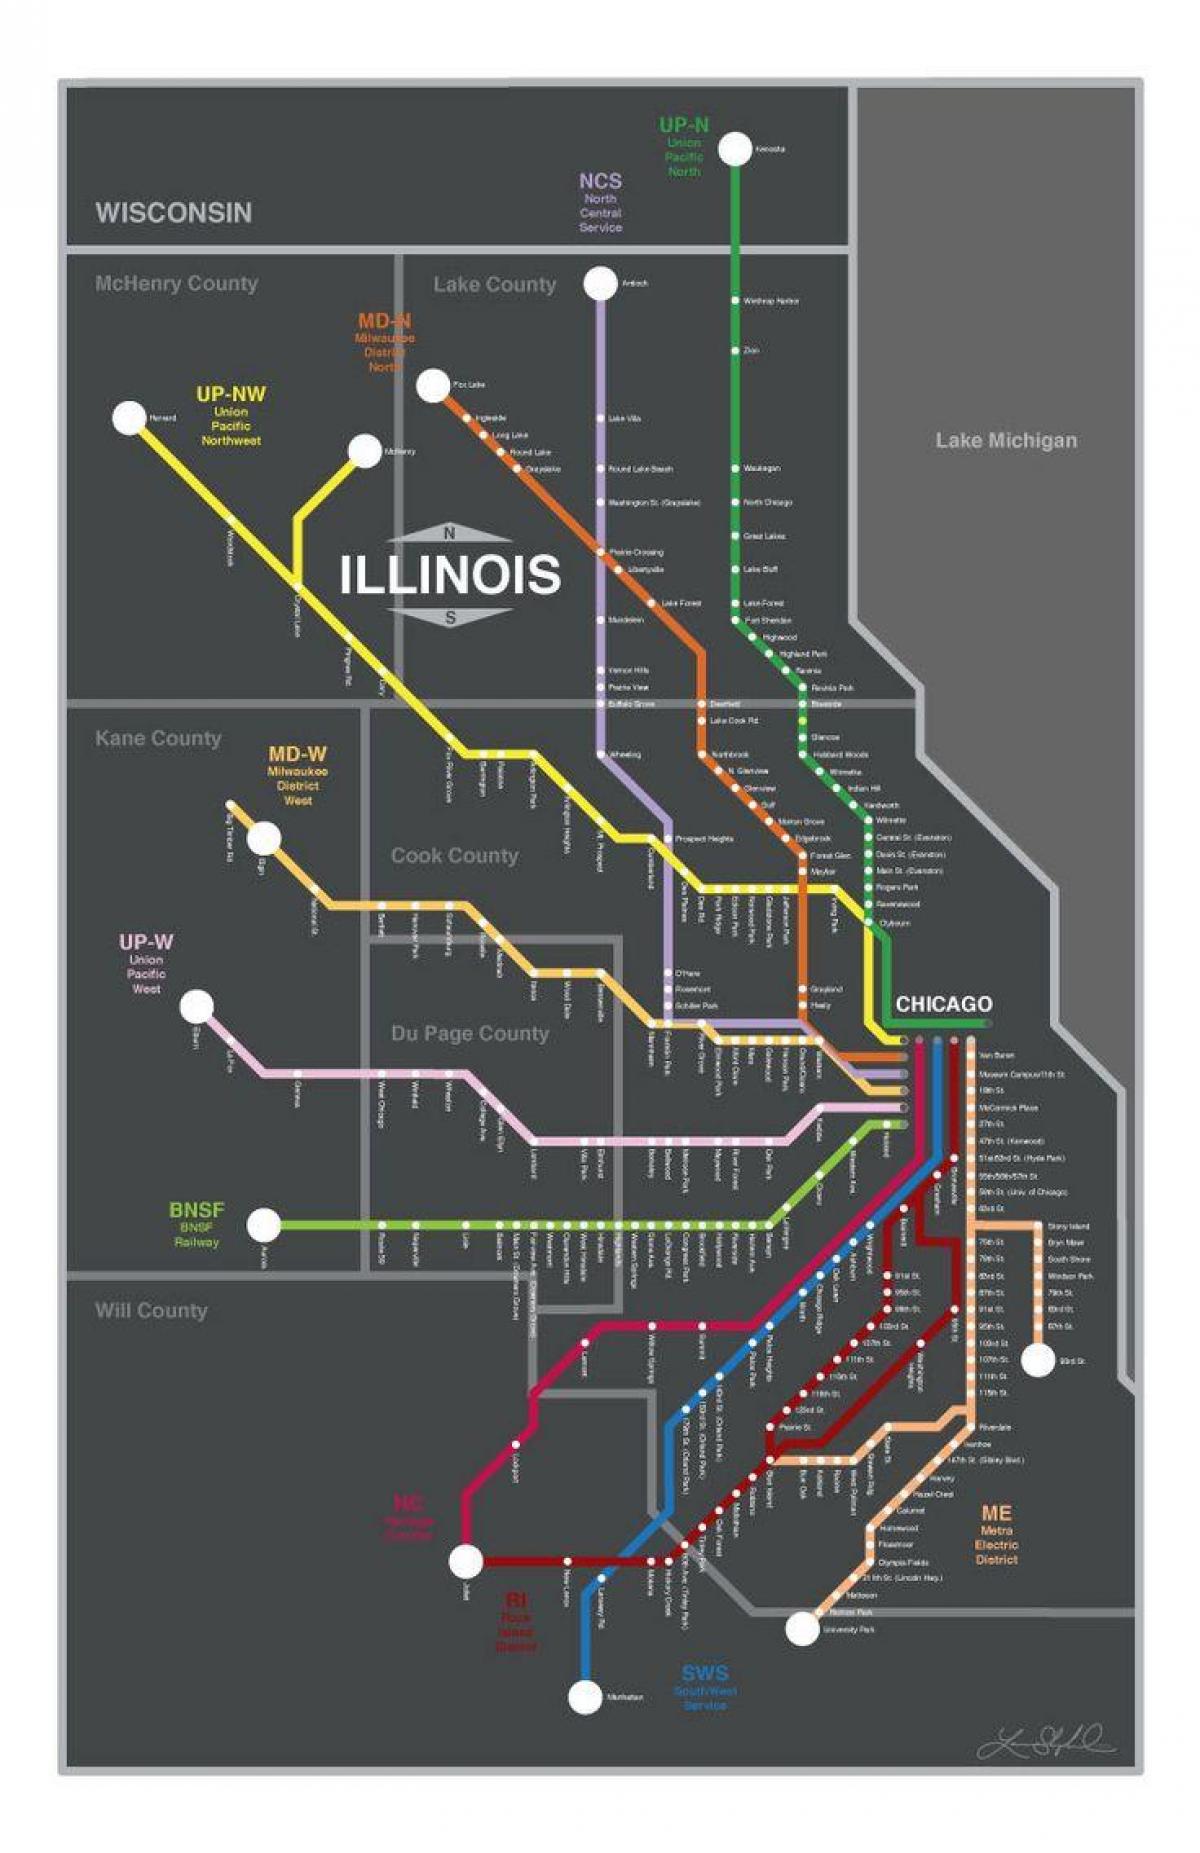 metra ट्रेन का नक्शा शिकागो